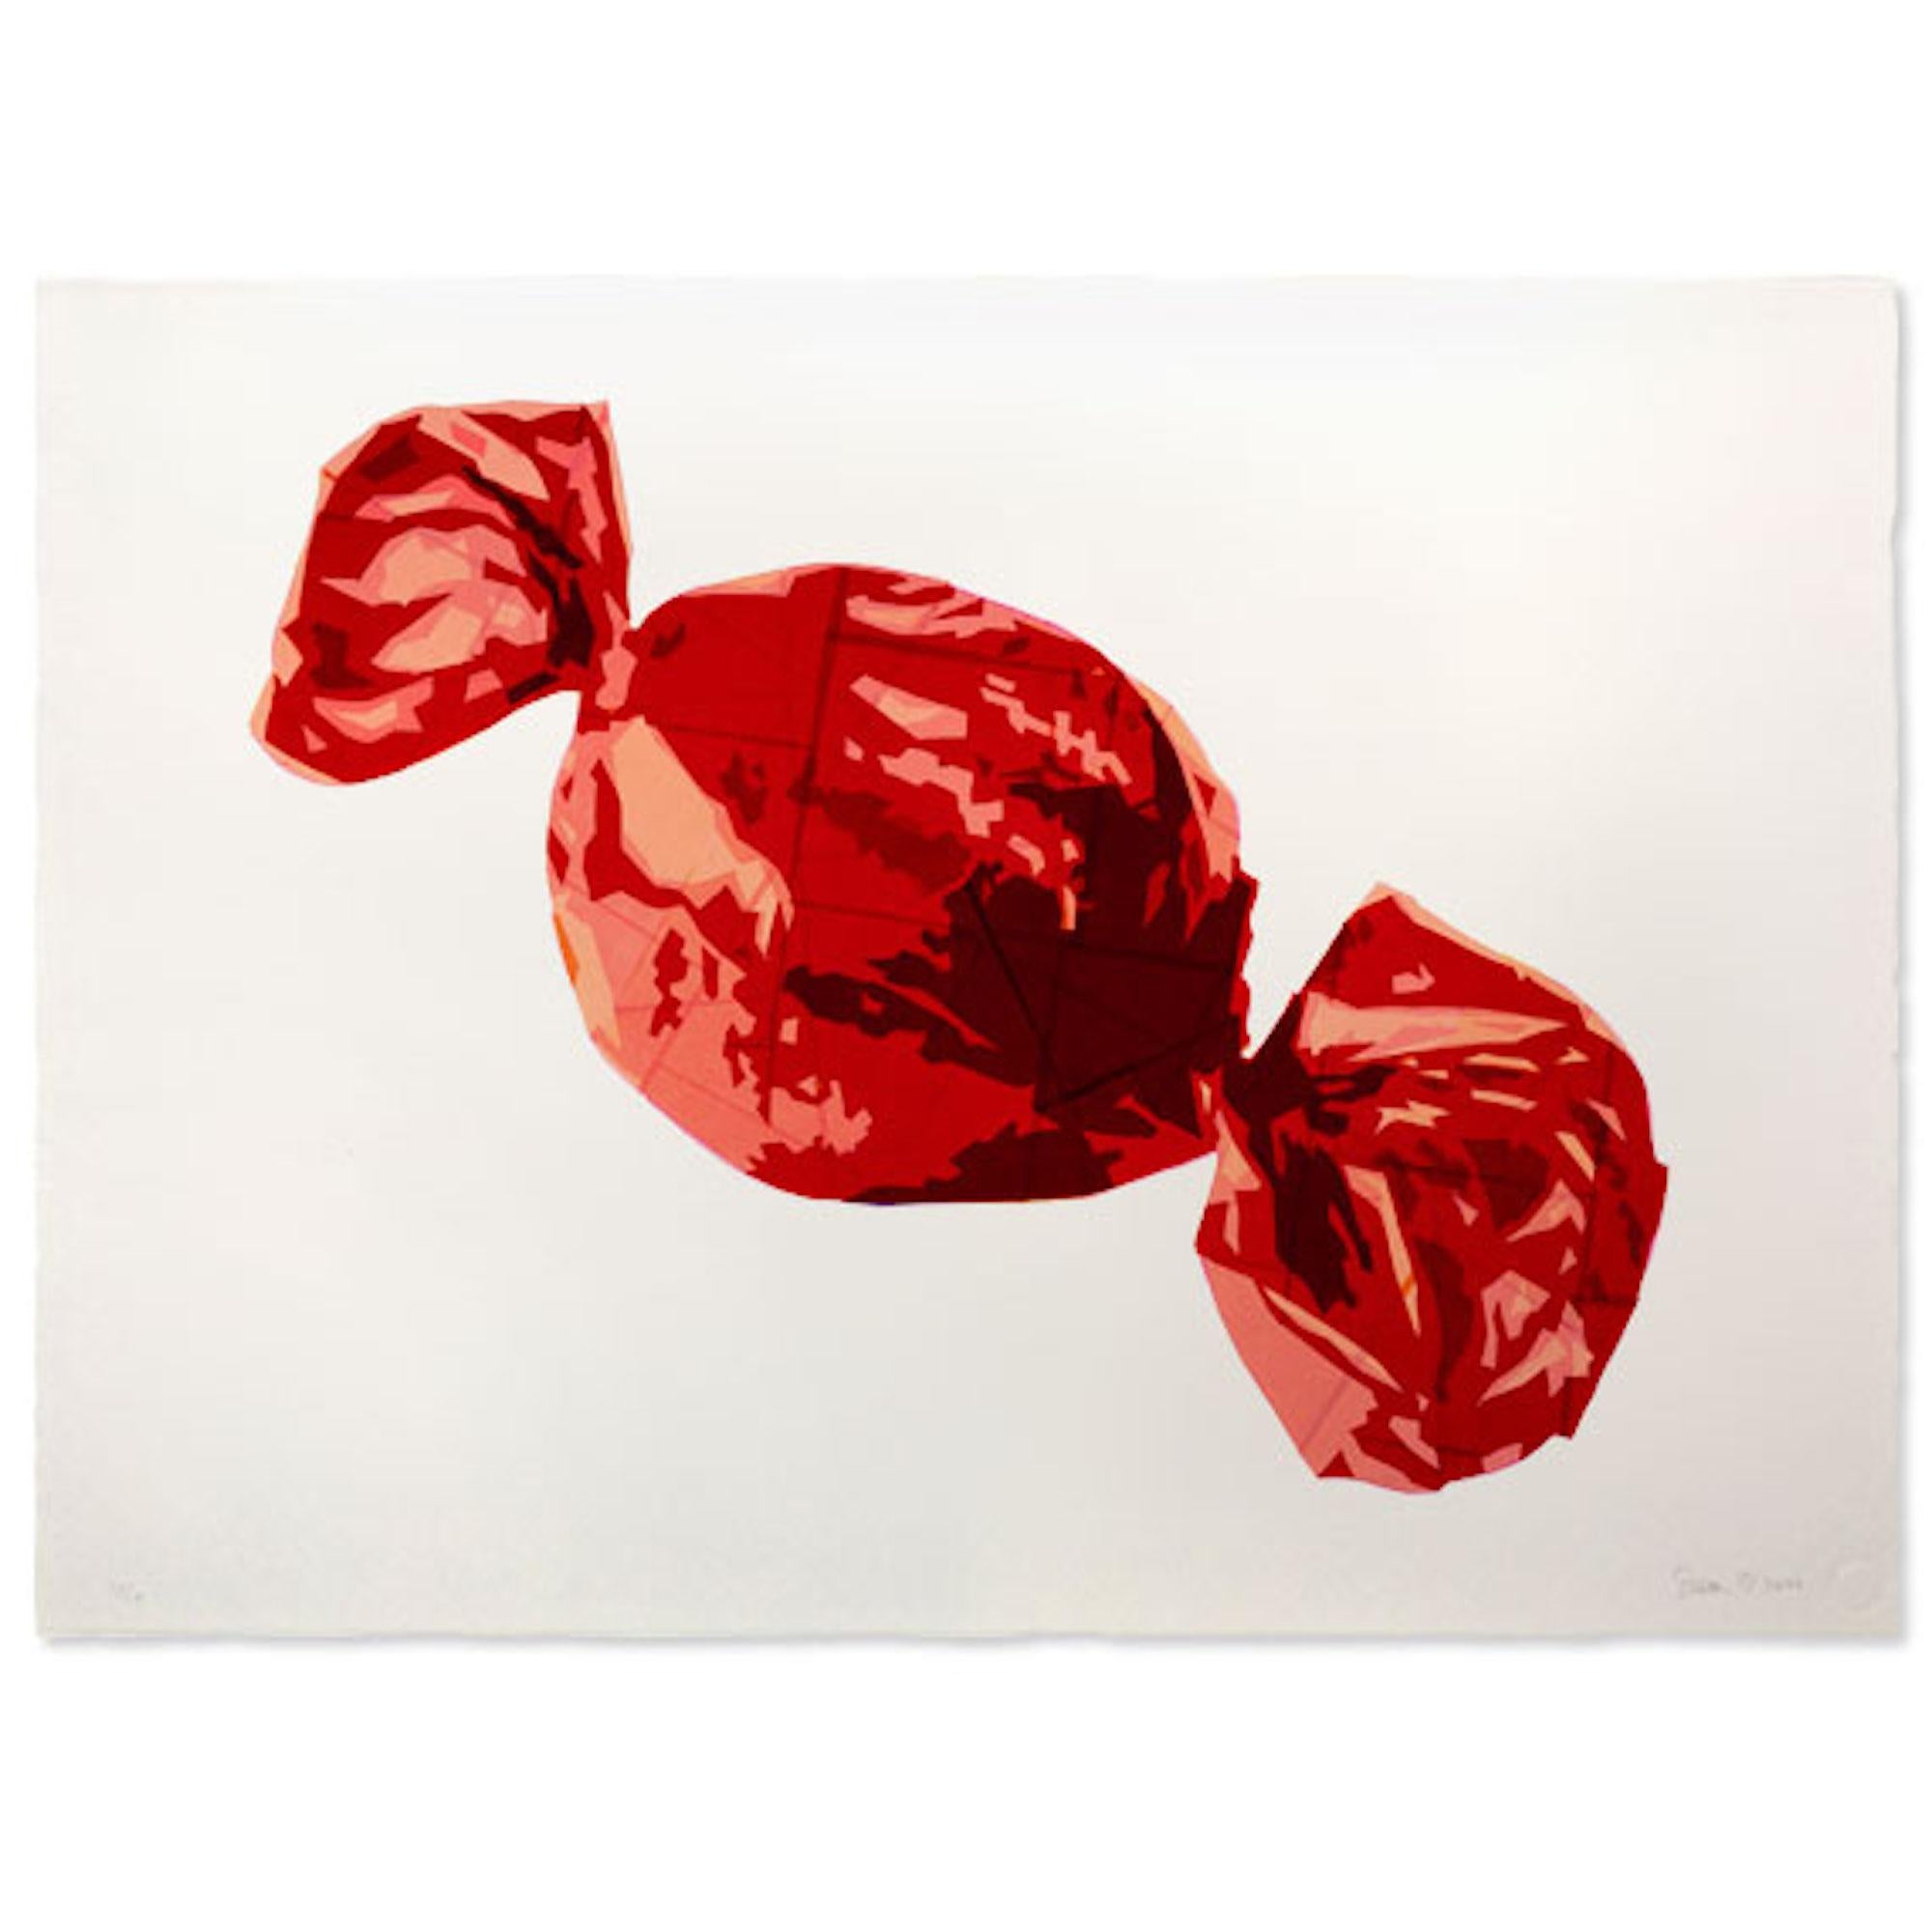 The Red One, Sweet Art, Street Artwork de qualité, Nature morte, Art culinaire - Pop Art Print par Simon Dry